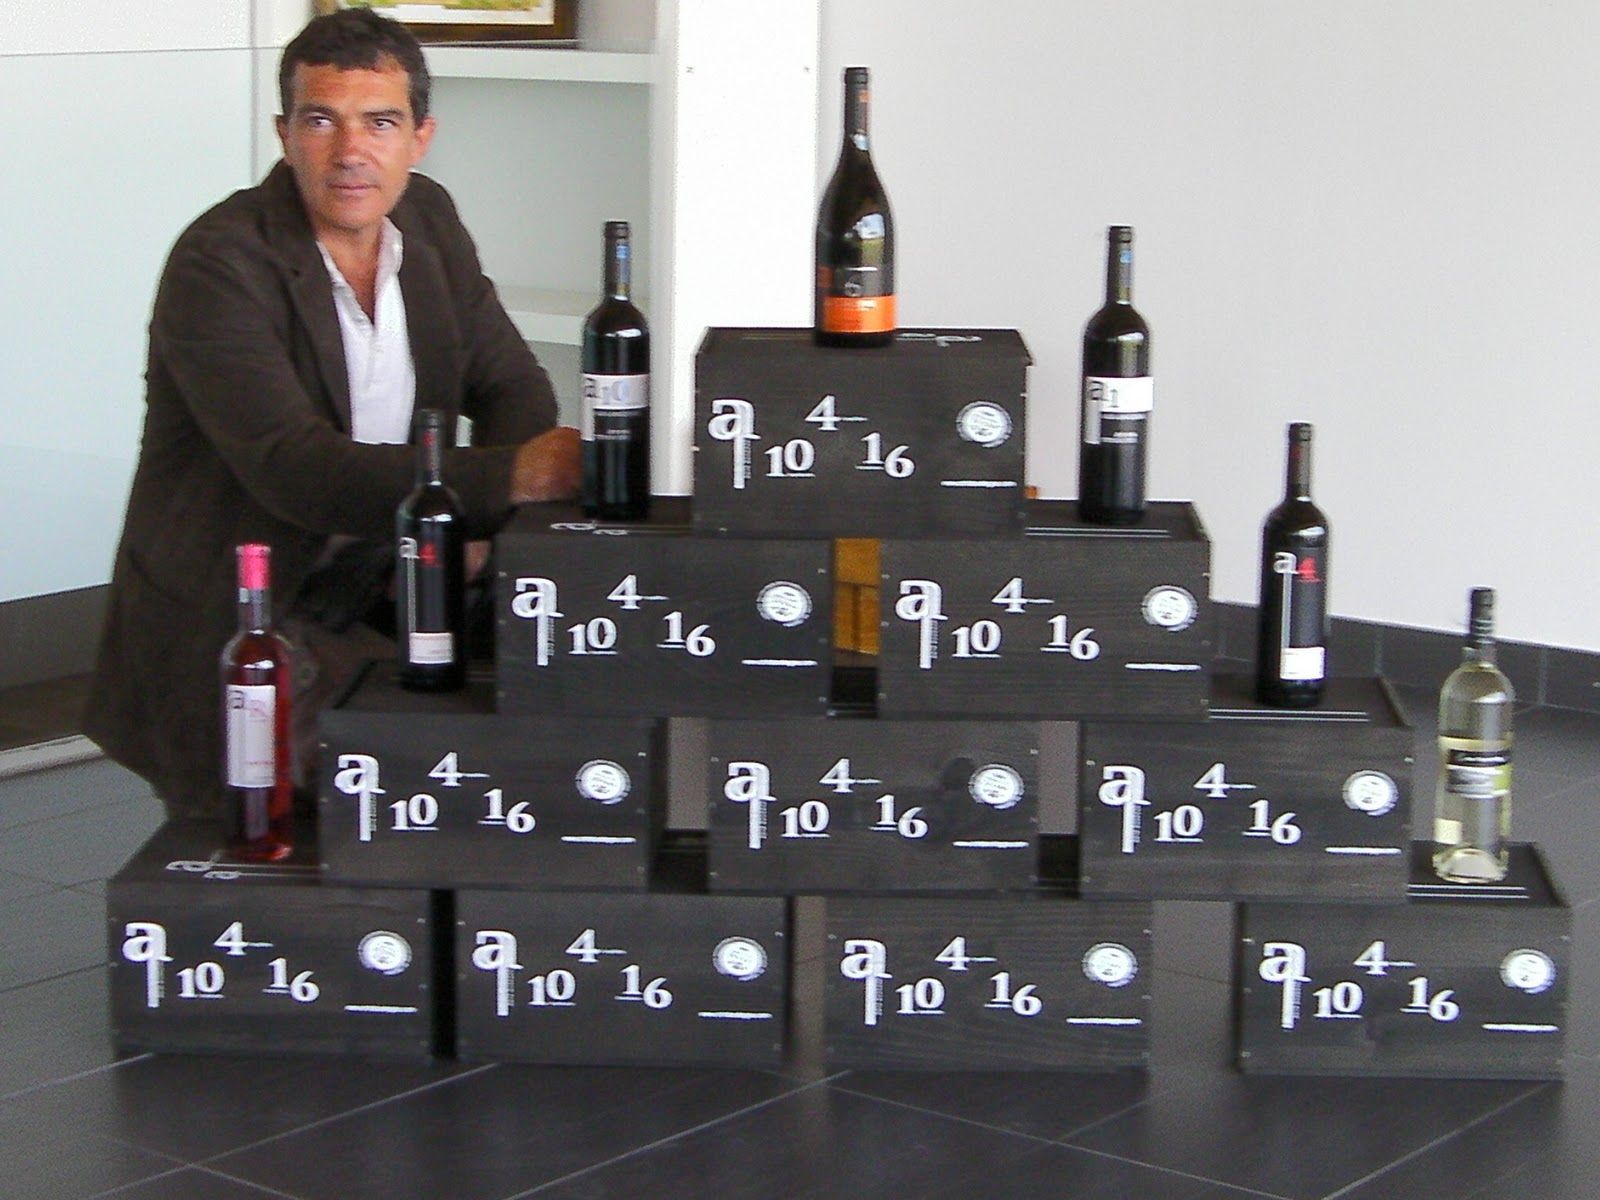 Antonio Banderas um ator que é produtor de vinhos 2